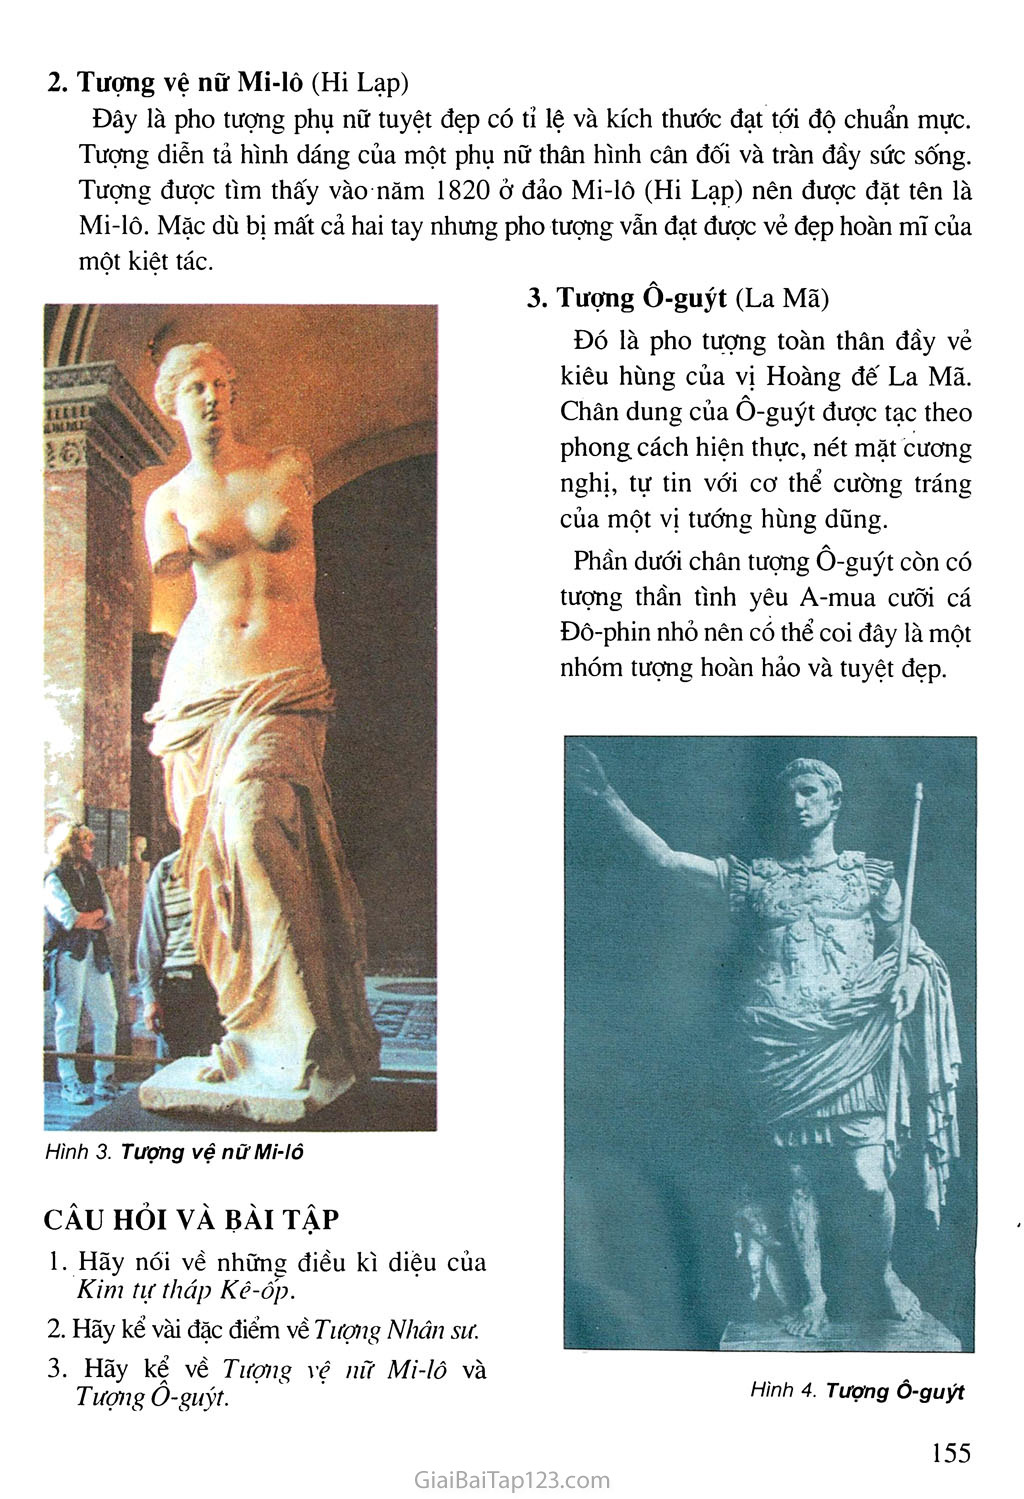 Bài 32. Thưởng thức mĩ thuật Một số công trình tiêu biểu của mĩ thuật Ai Cập, Hi Lạp, La Mã thời kì cổ đại trang 2